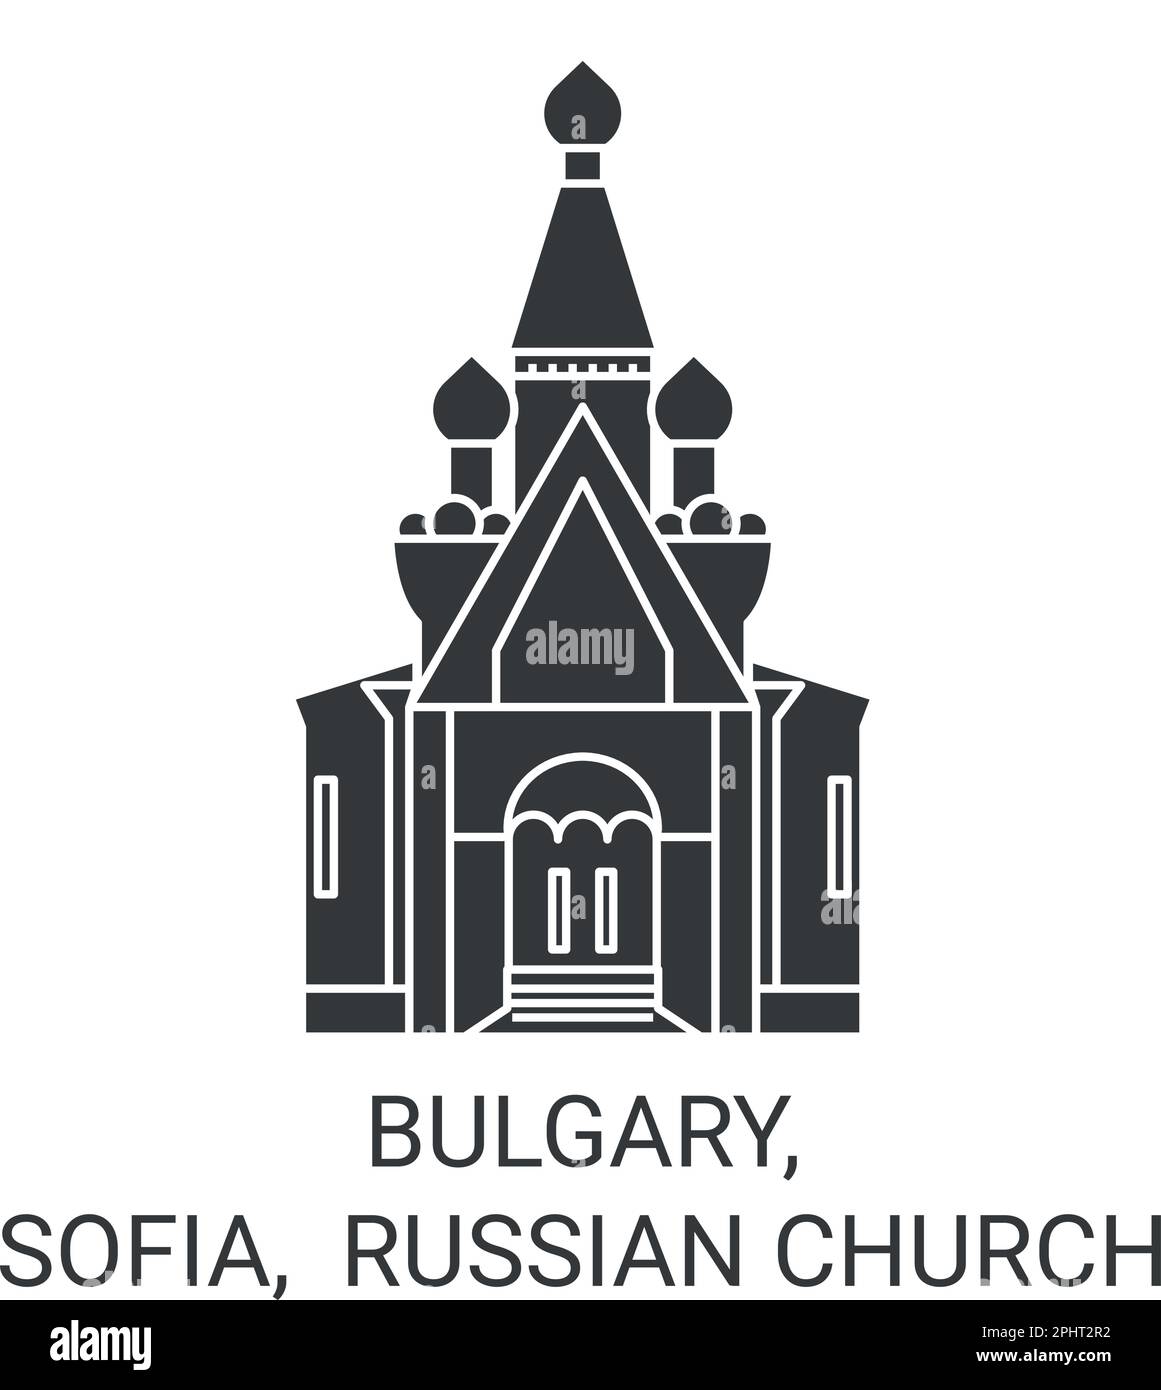 Bullary, Sofia, l'église russe Voyage repère illustration de vecteur Illustration de Vecteur